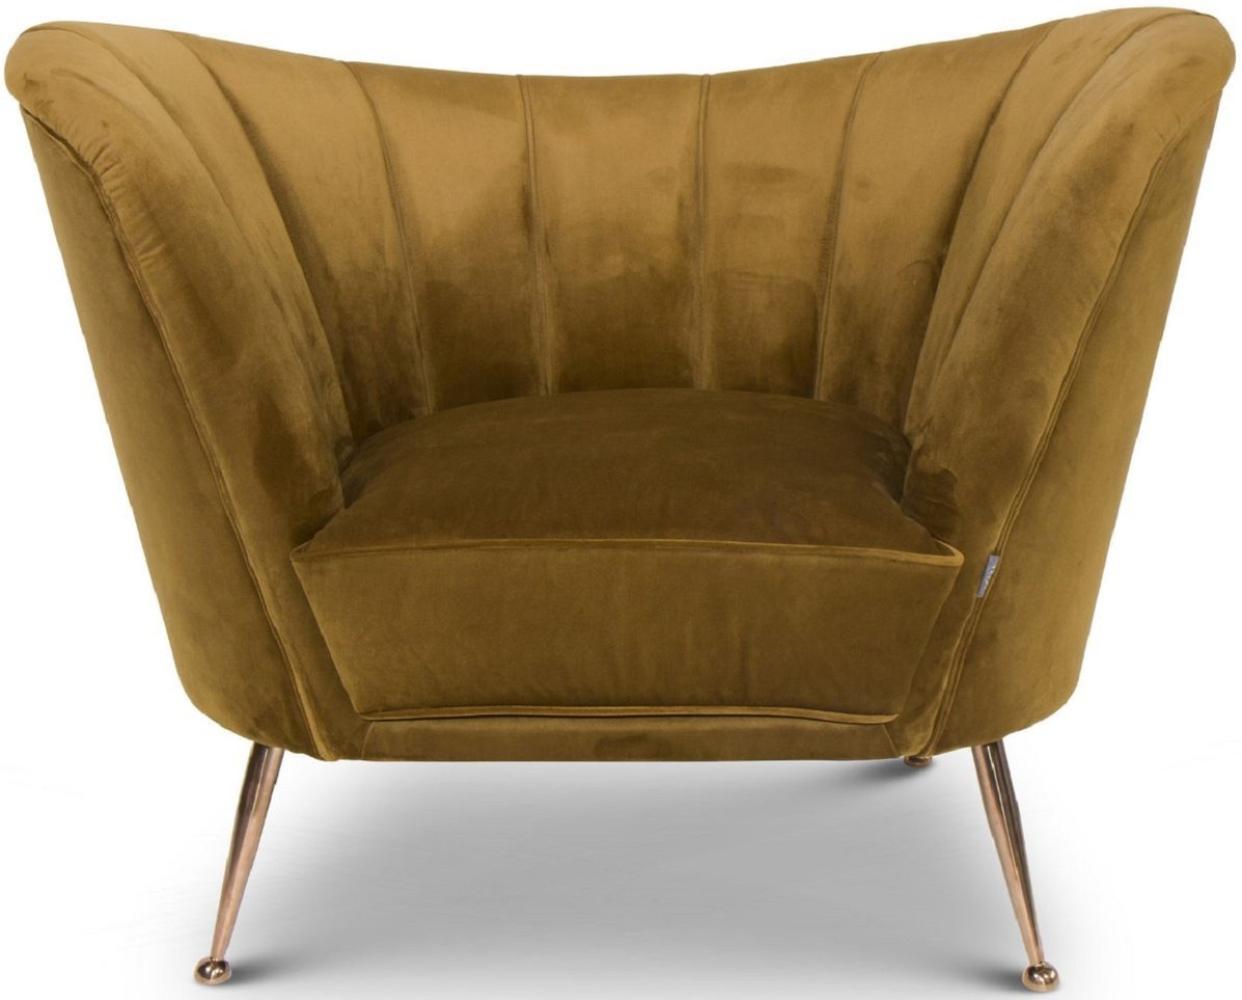 Casa Padrino Luxus Samt Sessel Ocker / Kupfer 77 x 78 x H. 102 cm - Art Deco Wohnzimmer Sessel - Luxus Möbel Bild 1